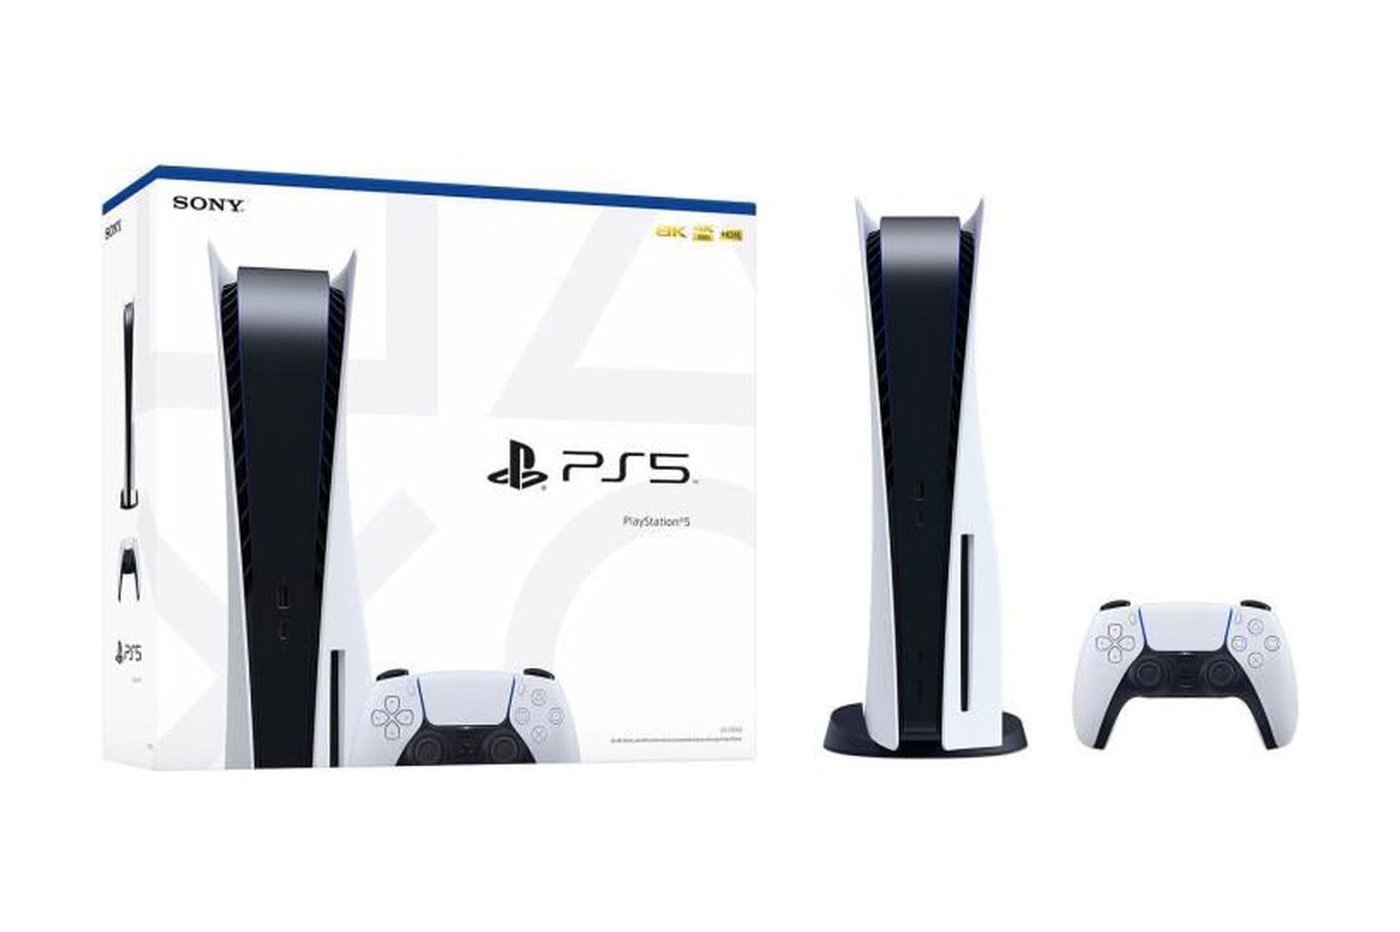 Promo Sony : la console PS5 voit son prix chuter pour quelques